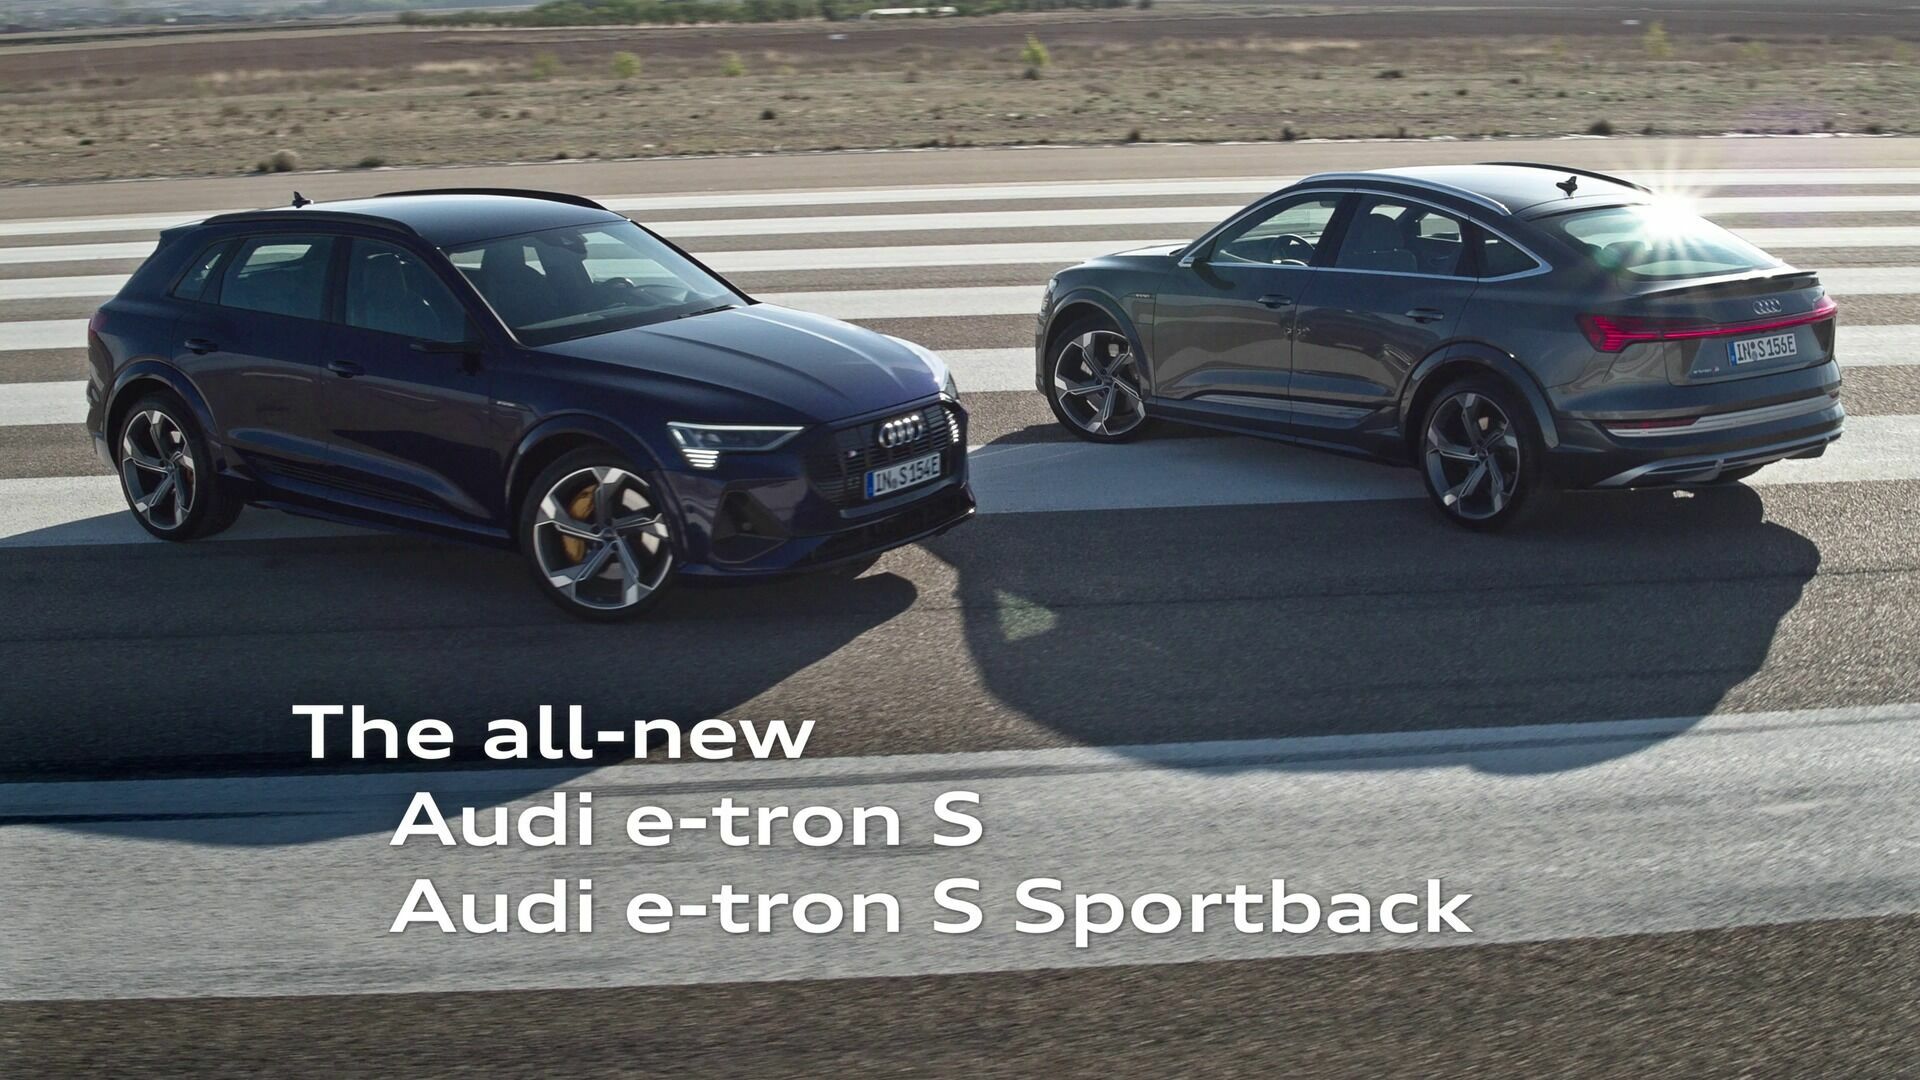 Elektrisch ohne Kompromisse – der Audi e-tron S und e-tron S Sportback